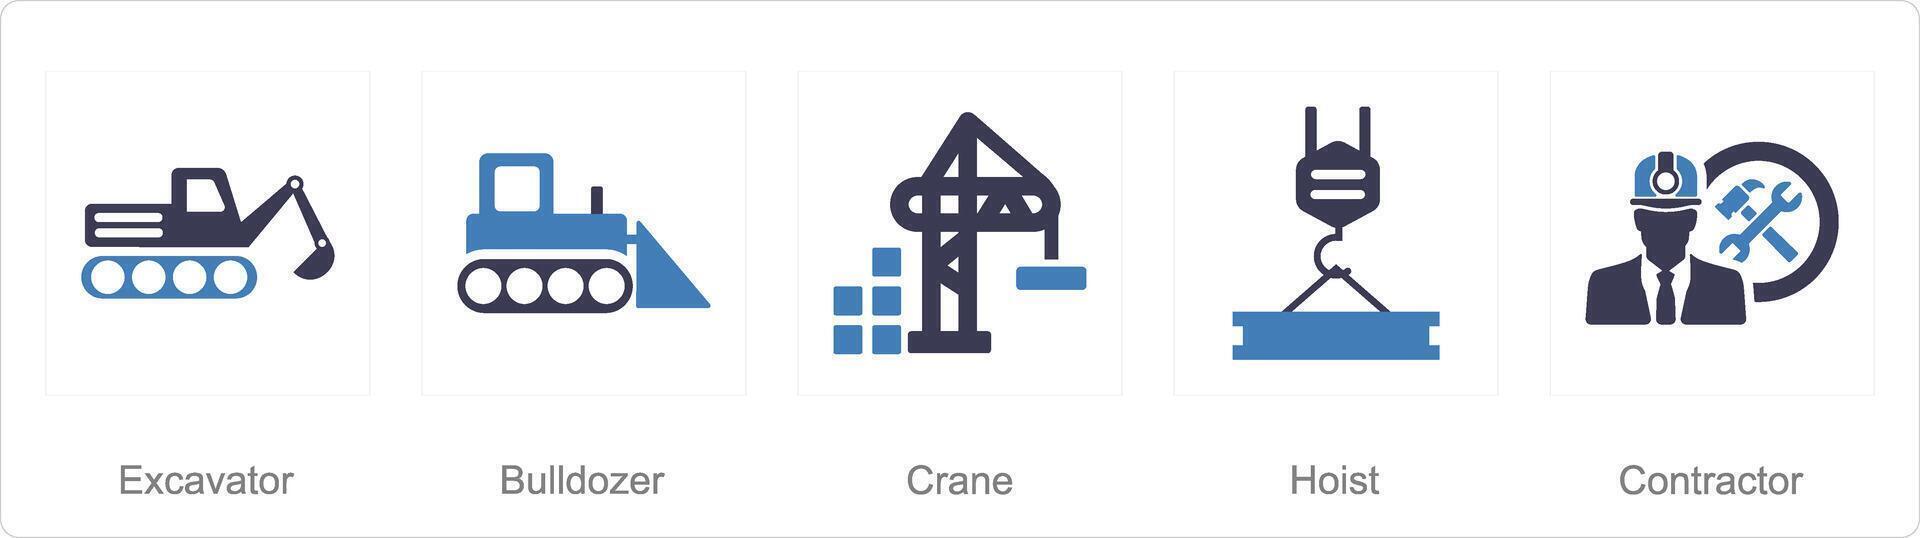 A set of 5 Build icons as excavator, bulldozer, crane vector